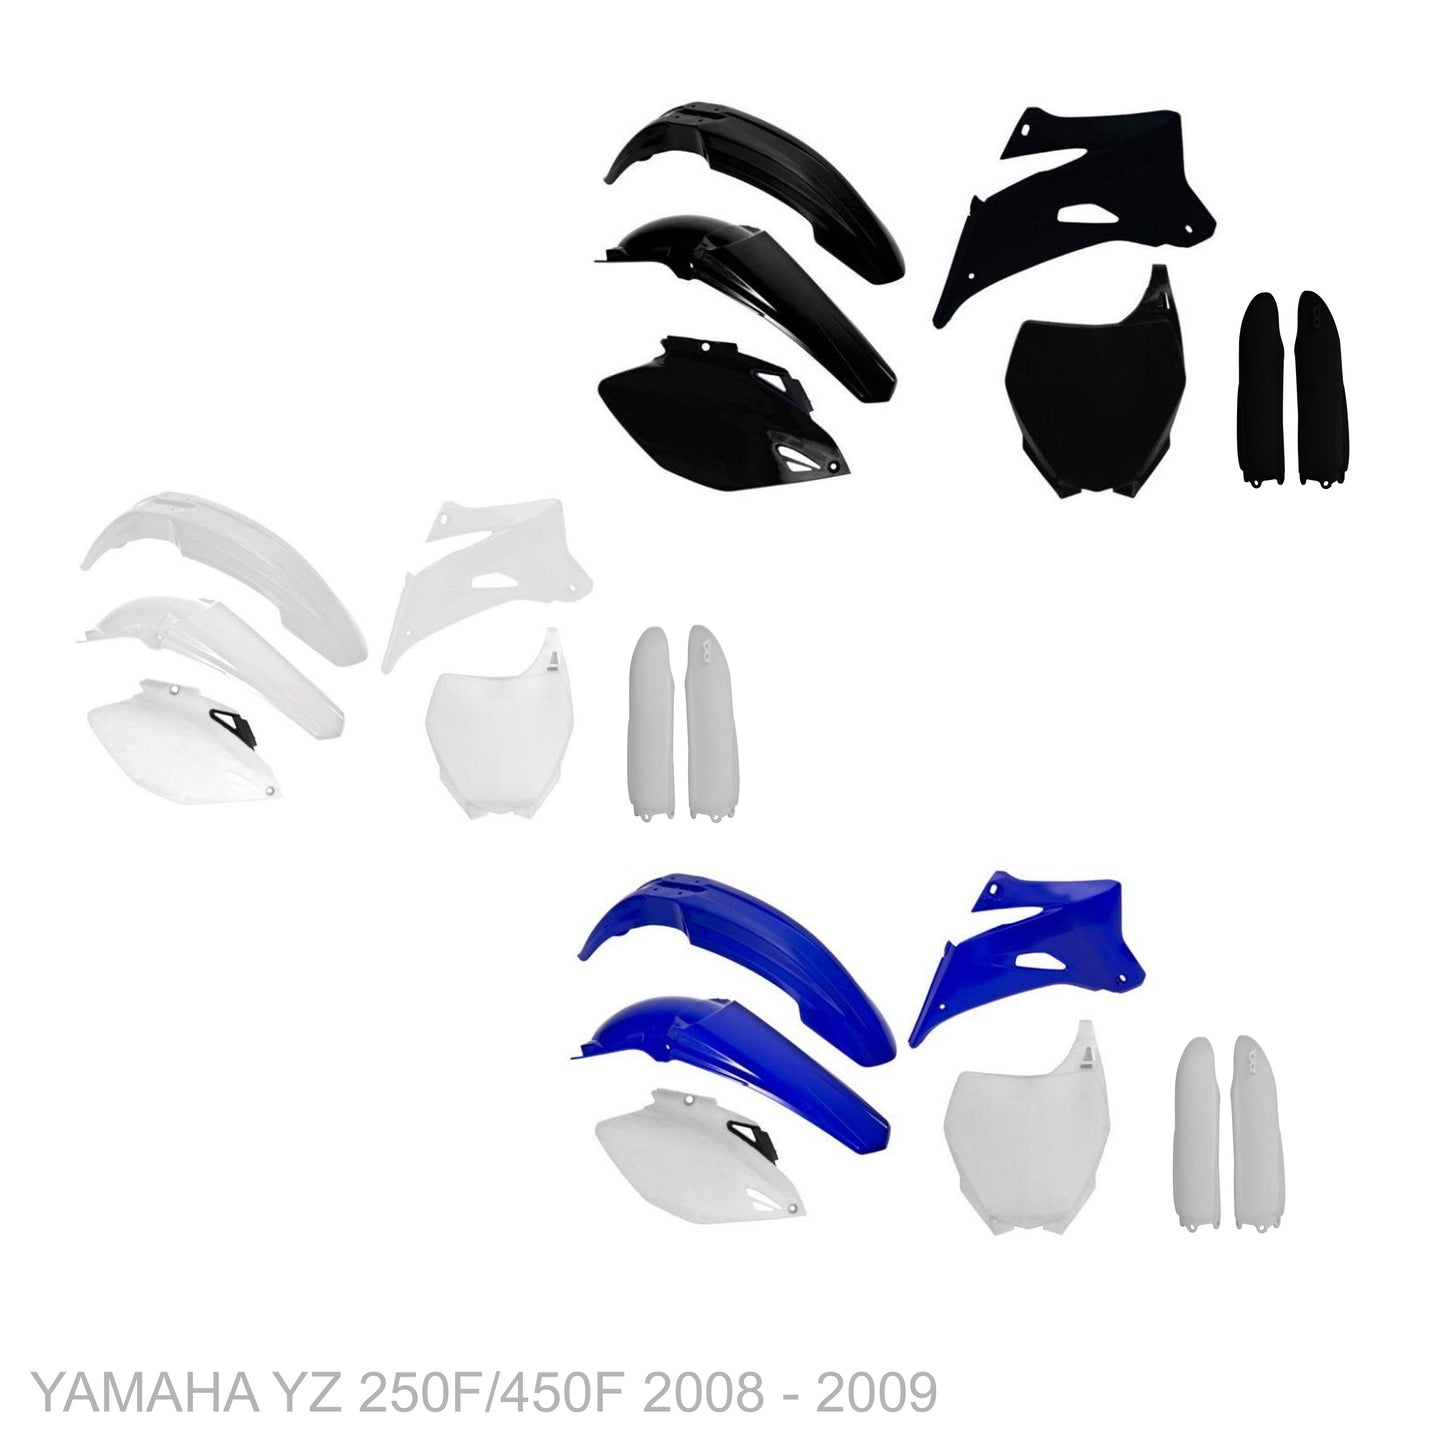 YAMAHA YZ 250F 2008 - 2009 VICE Graphics kit